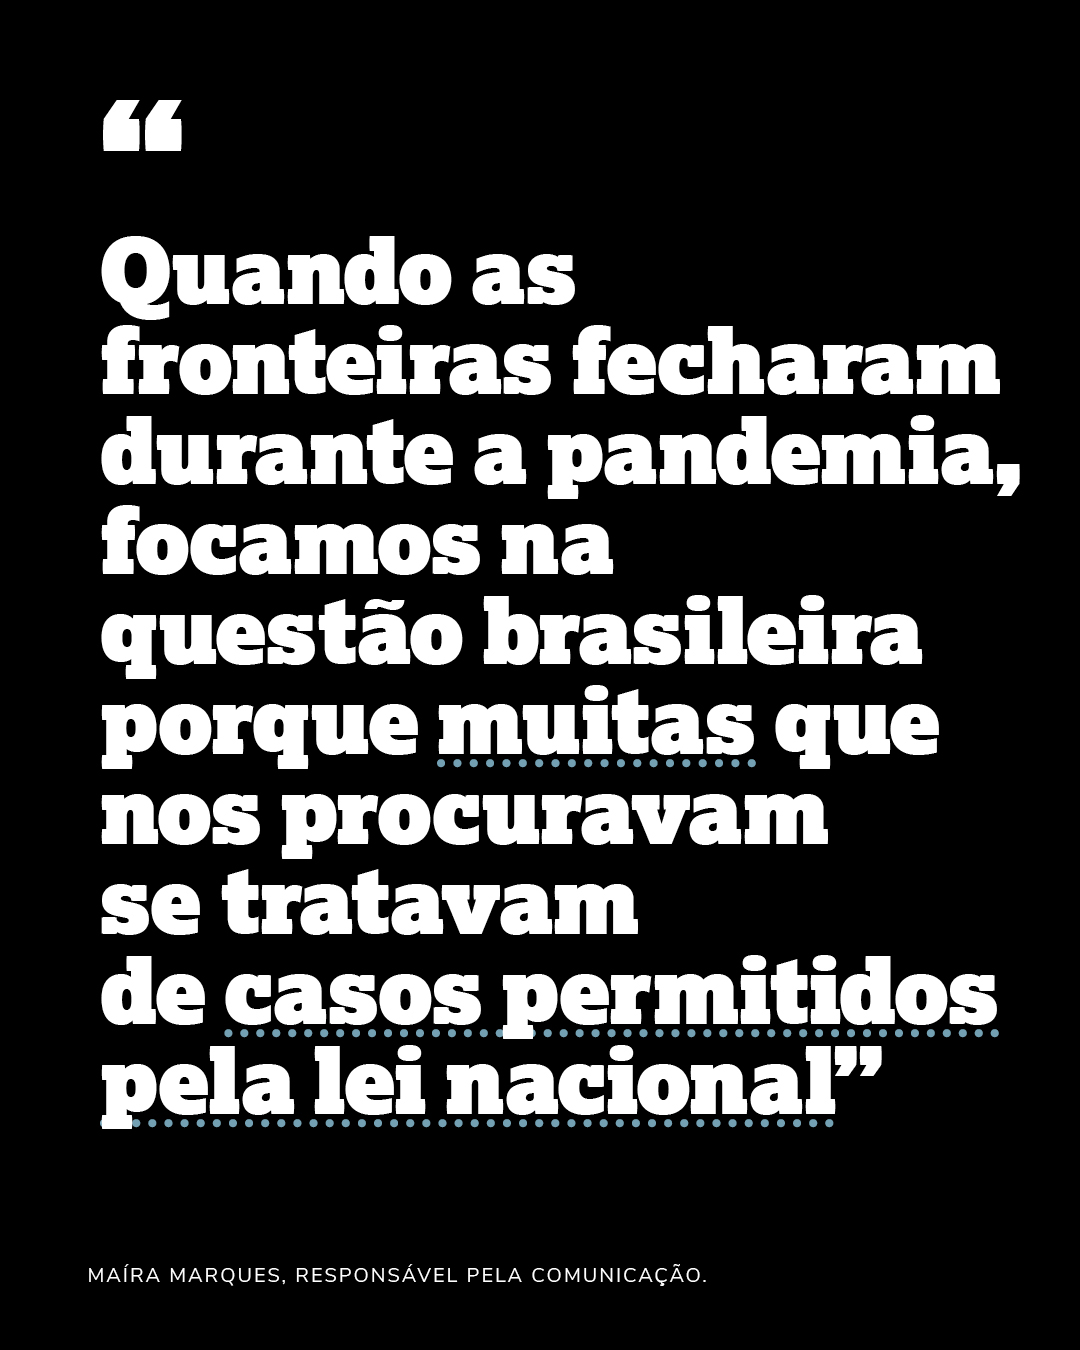 “Quando as fronteiras fecharam durante a pandemia, focamos na questão brasileira porque muitas que nos procuravam se tratavam de casos permitidospela lei nacional”Maíra Marques, responsável pela comunicação